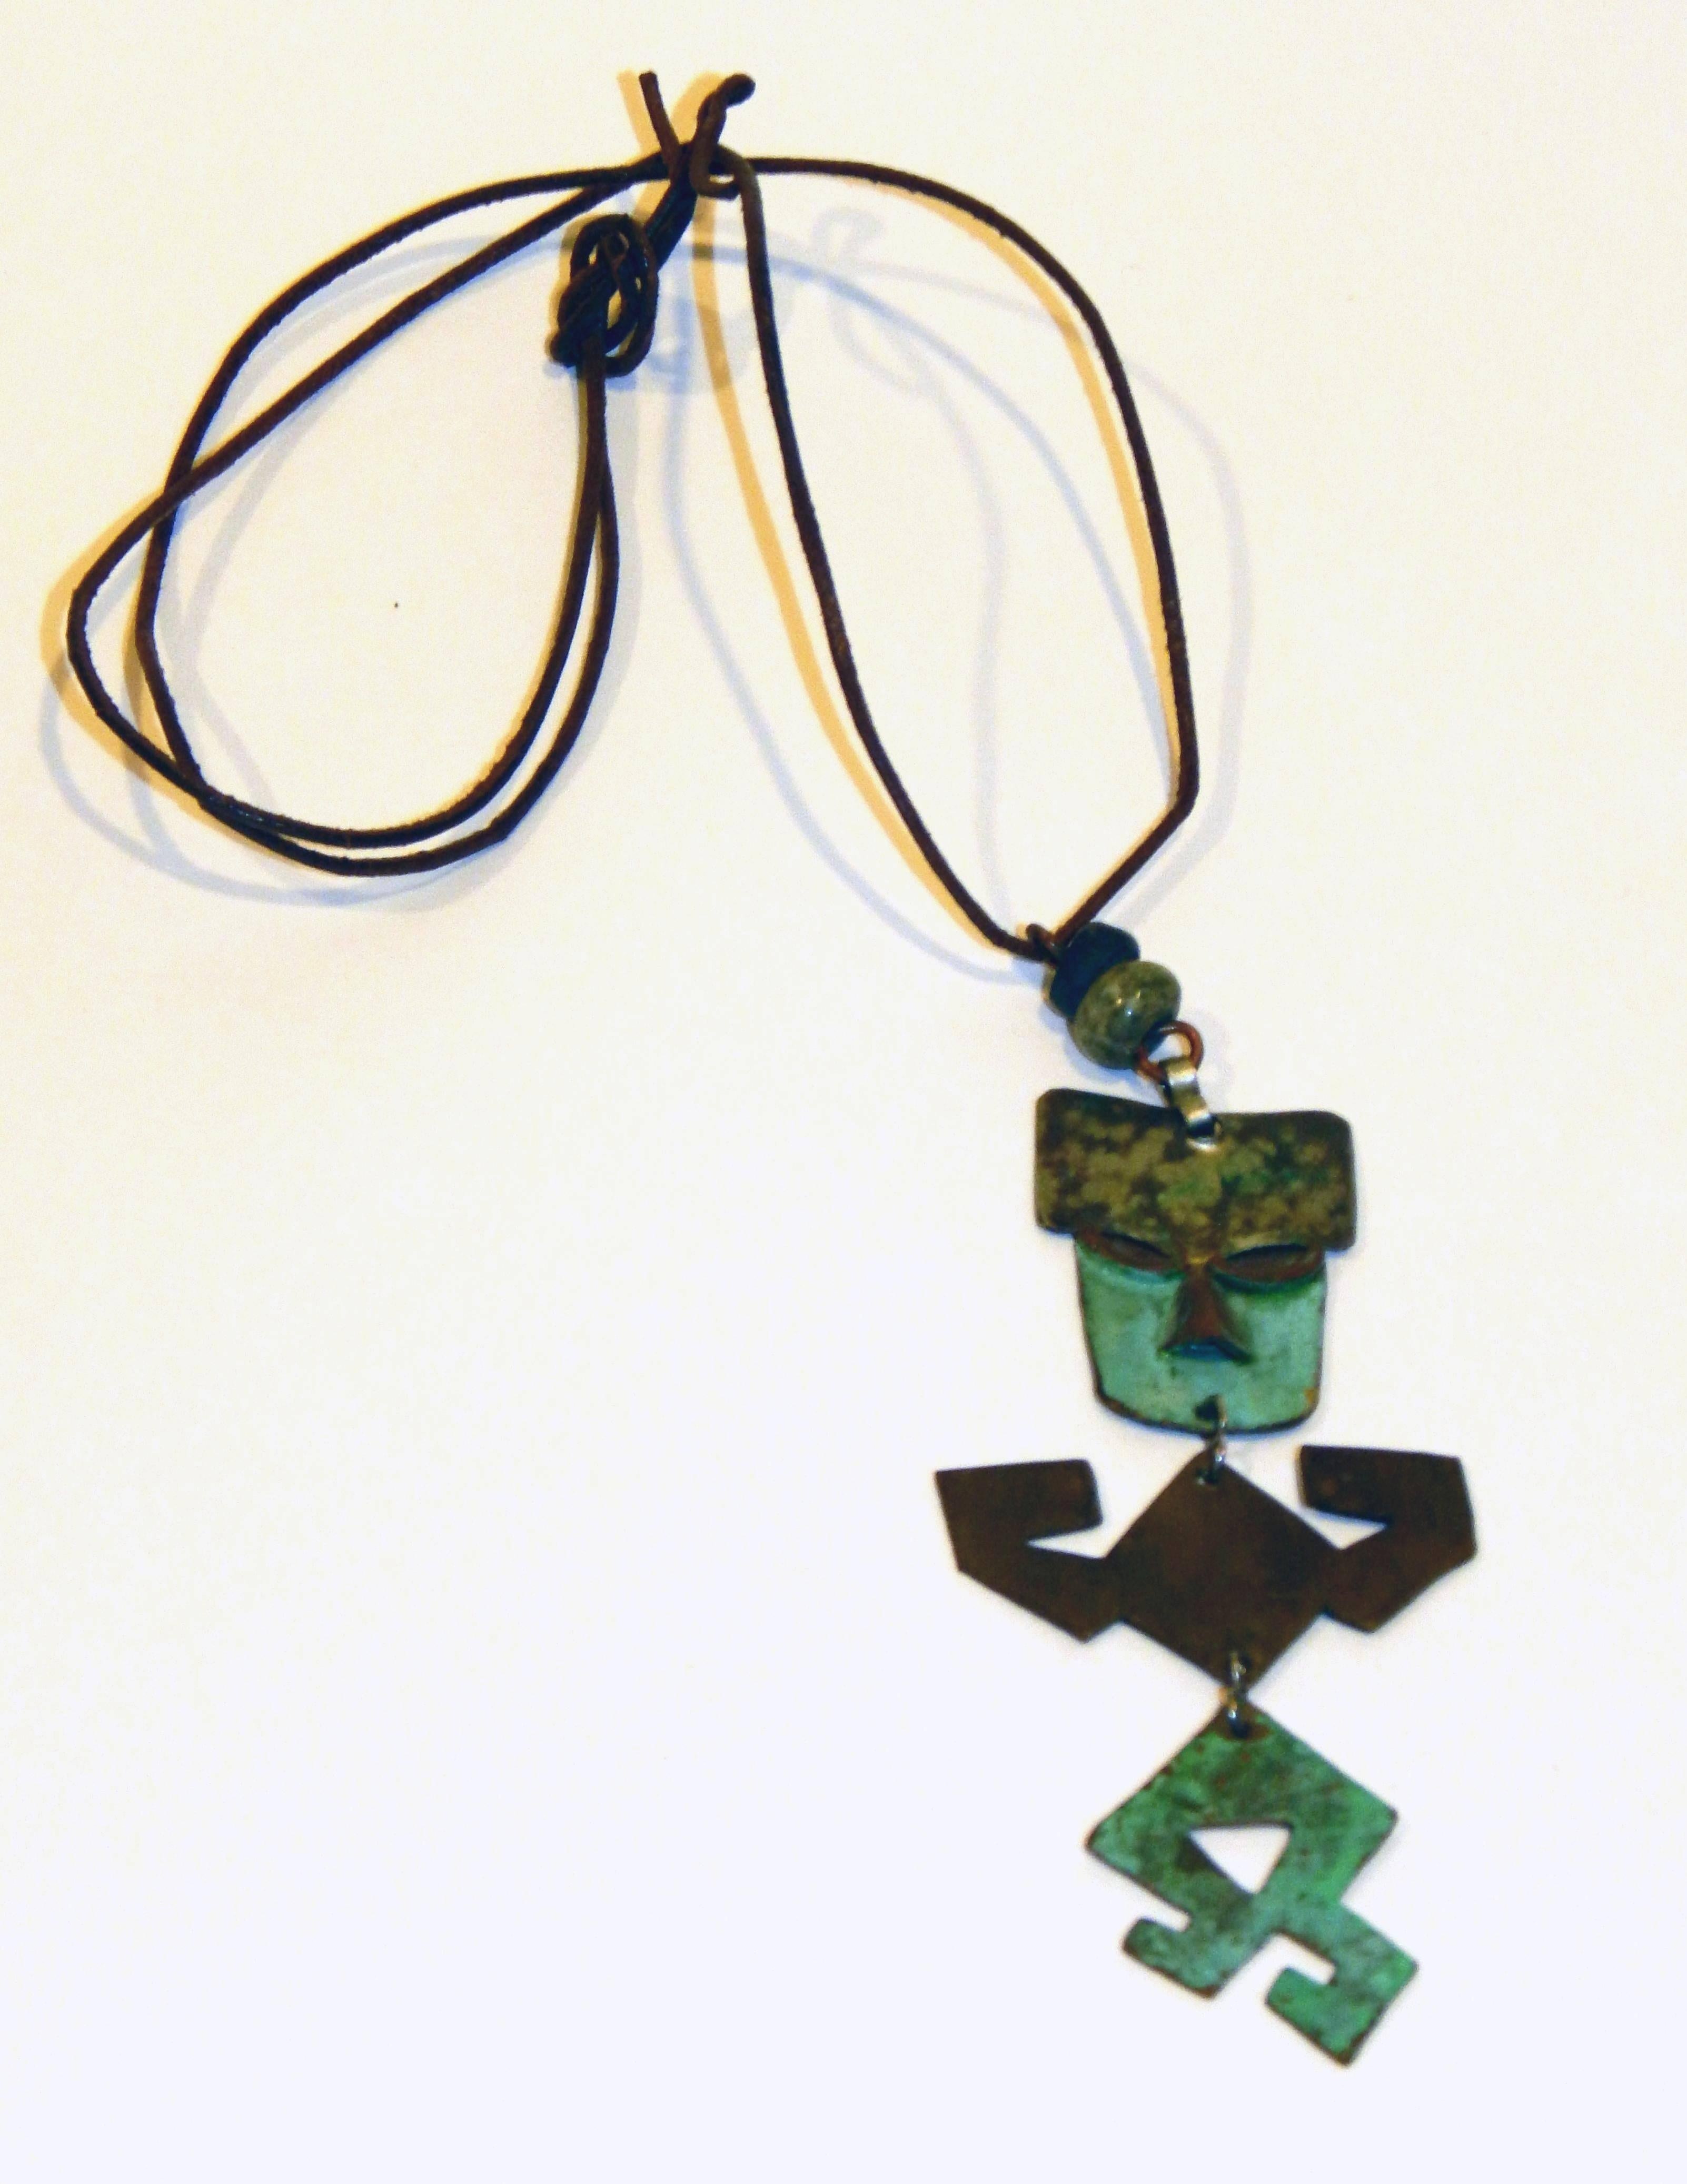 Magnifique collier en cuivre vintage fabriqué au Mexique.
Par l'artiste ex-patron Ken Beldin, années 1940 et 1950, non signé.
Mesures : 4